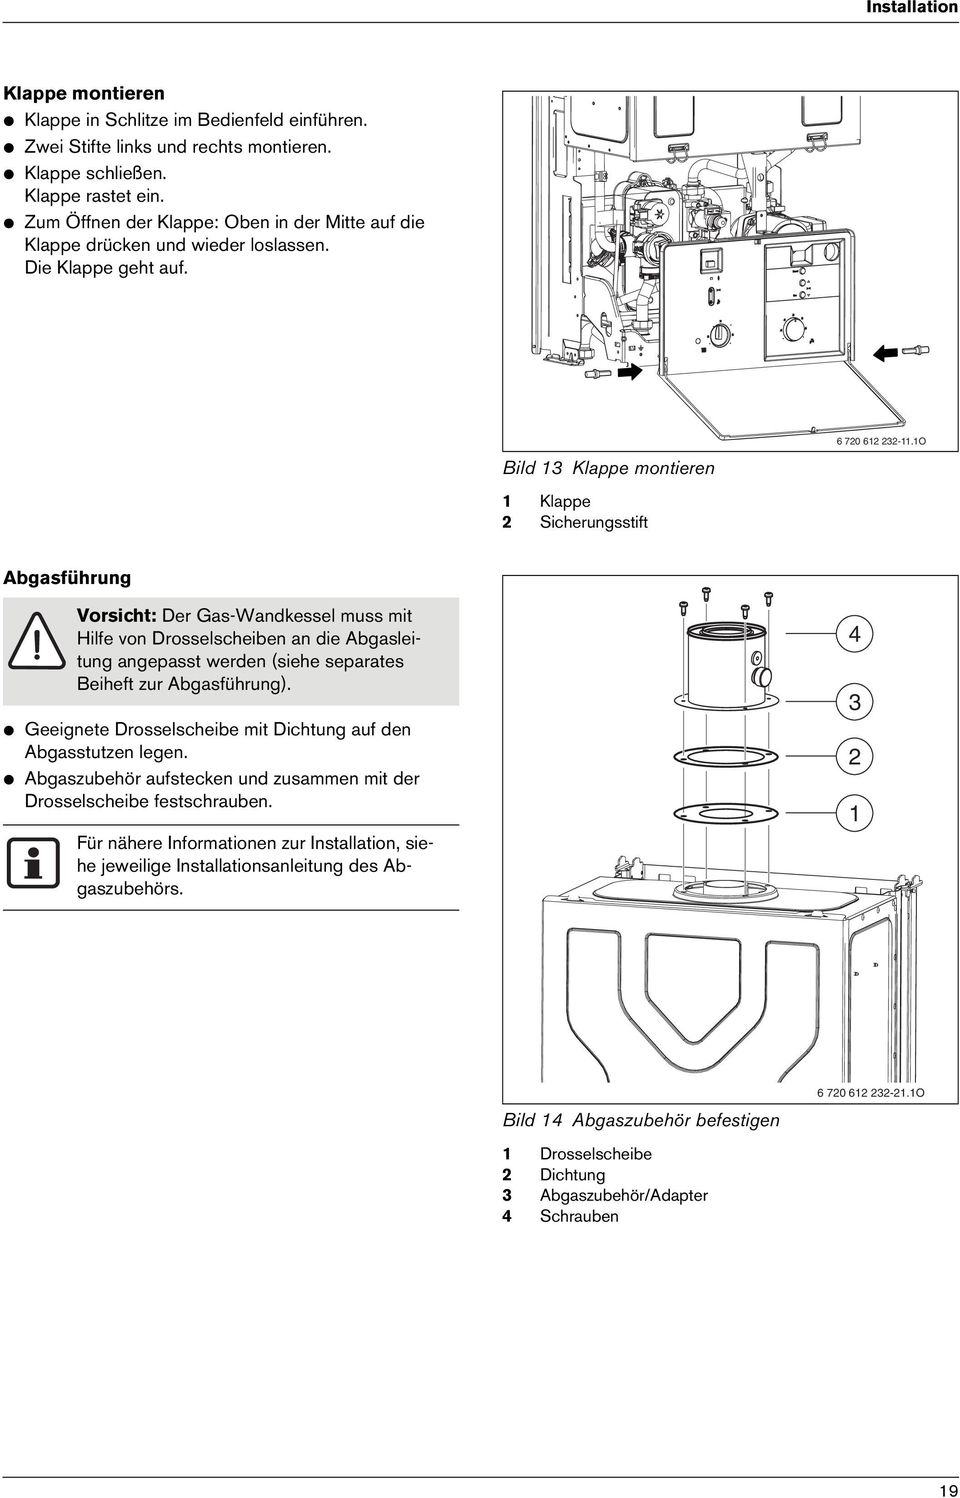 1O Abgasführung Vorsicht: Der Gas-Wandkessel muss mit Hilfe von Drosselscheiben an die Abgasleitung angepasst werden (siehe separates Beiheft zur Abgasführung).